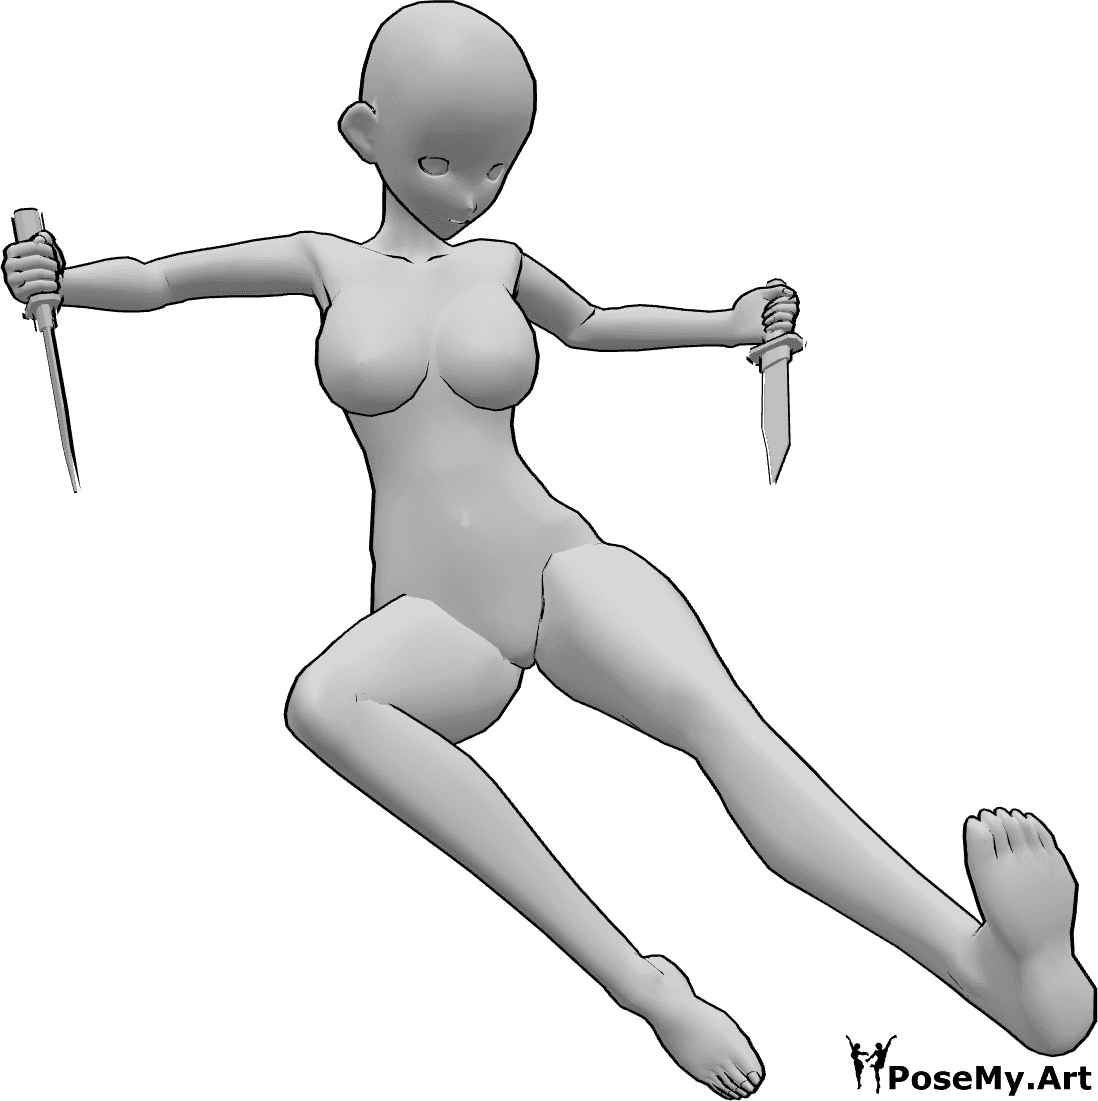 Referencia de poses- Anime patada cuchillo pose - Mujer anime está saltando, pateando mientras sostiene cuchillos en ambas manos